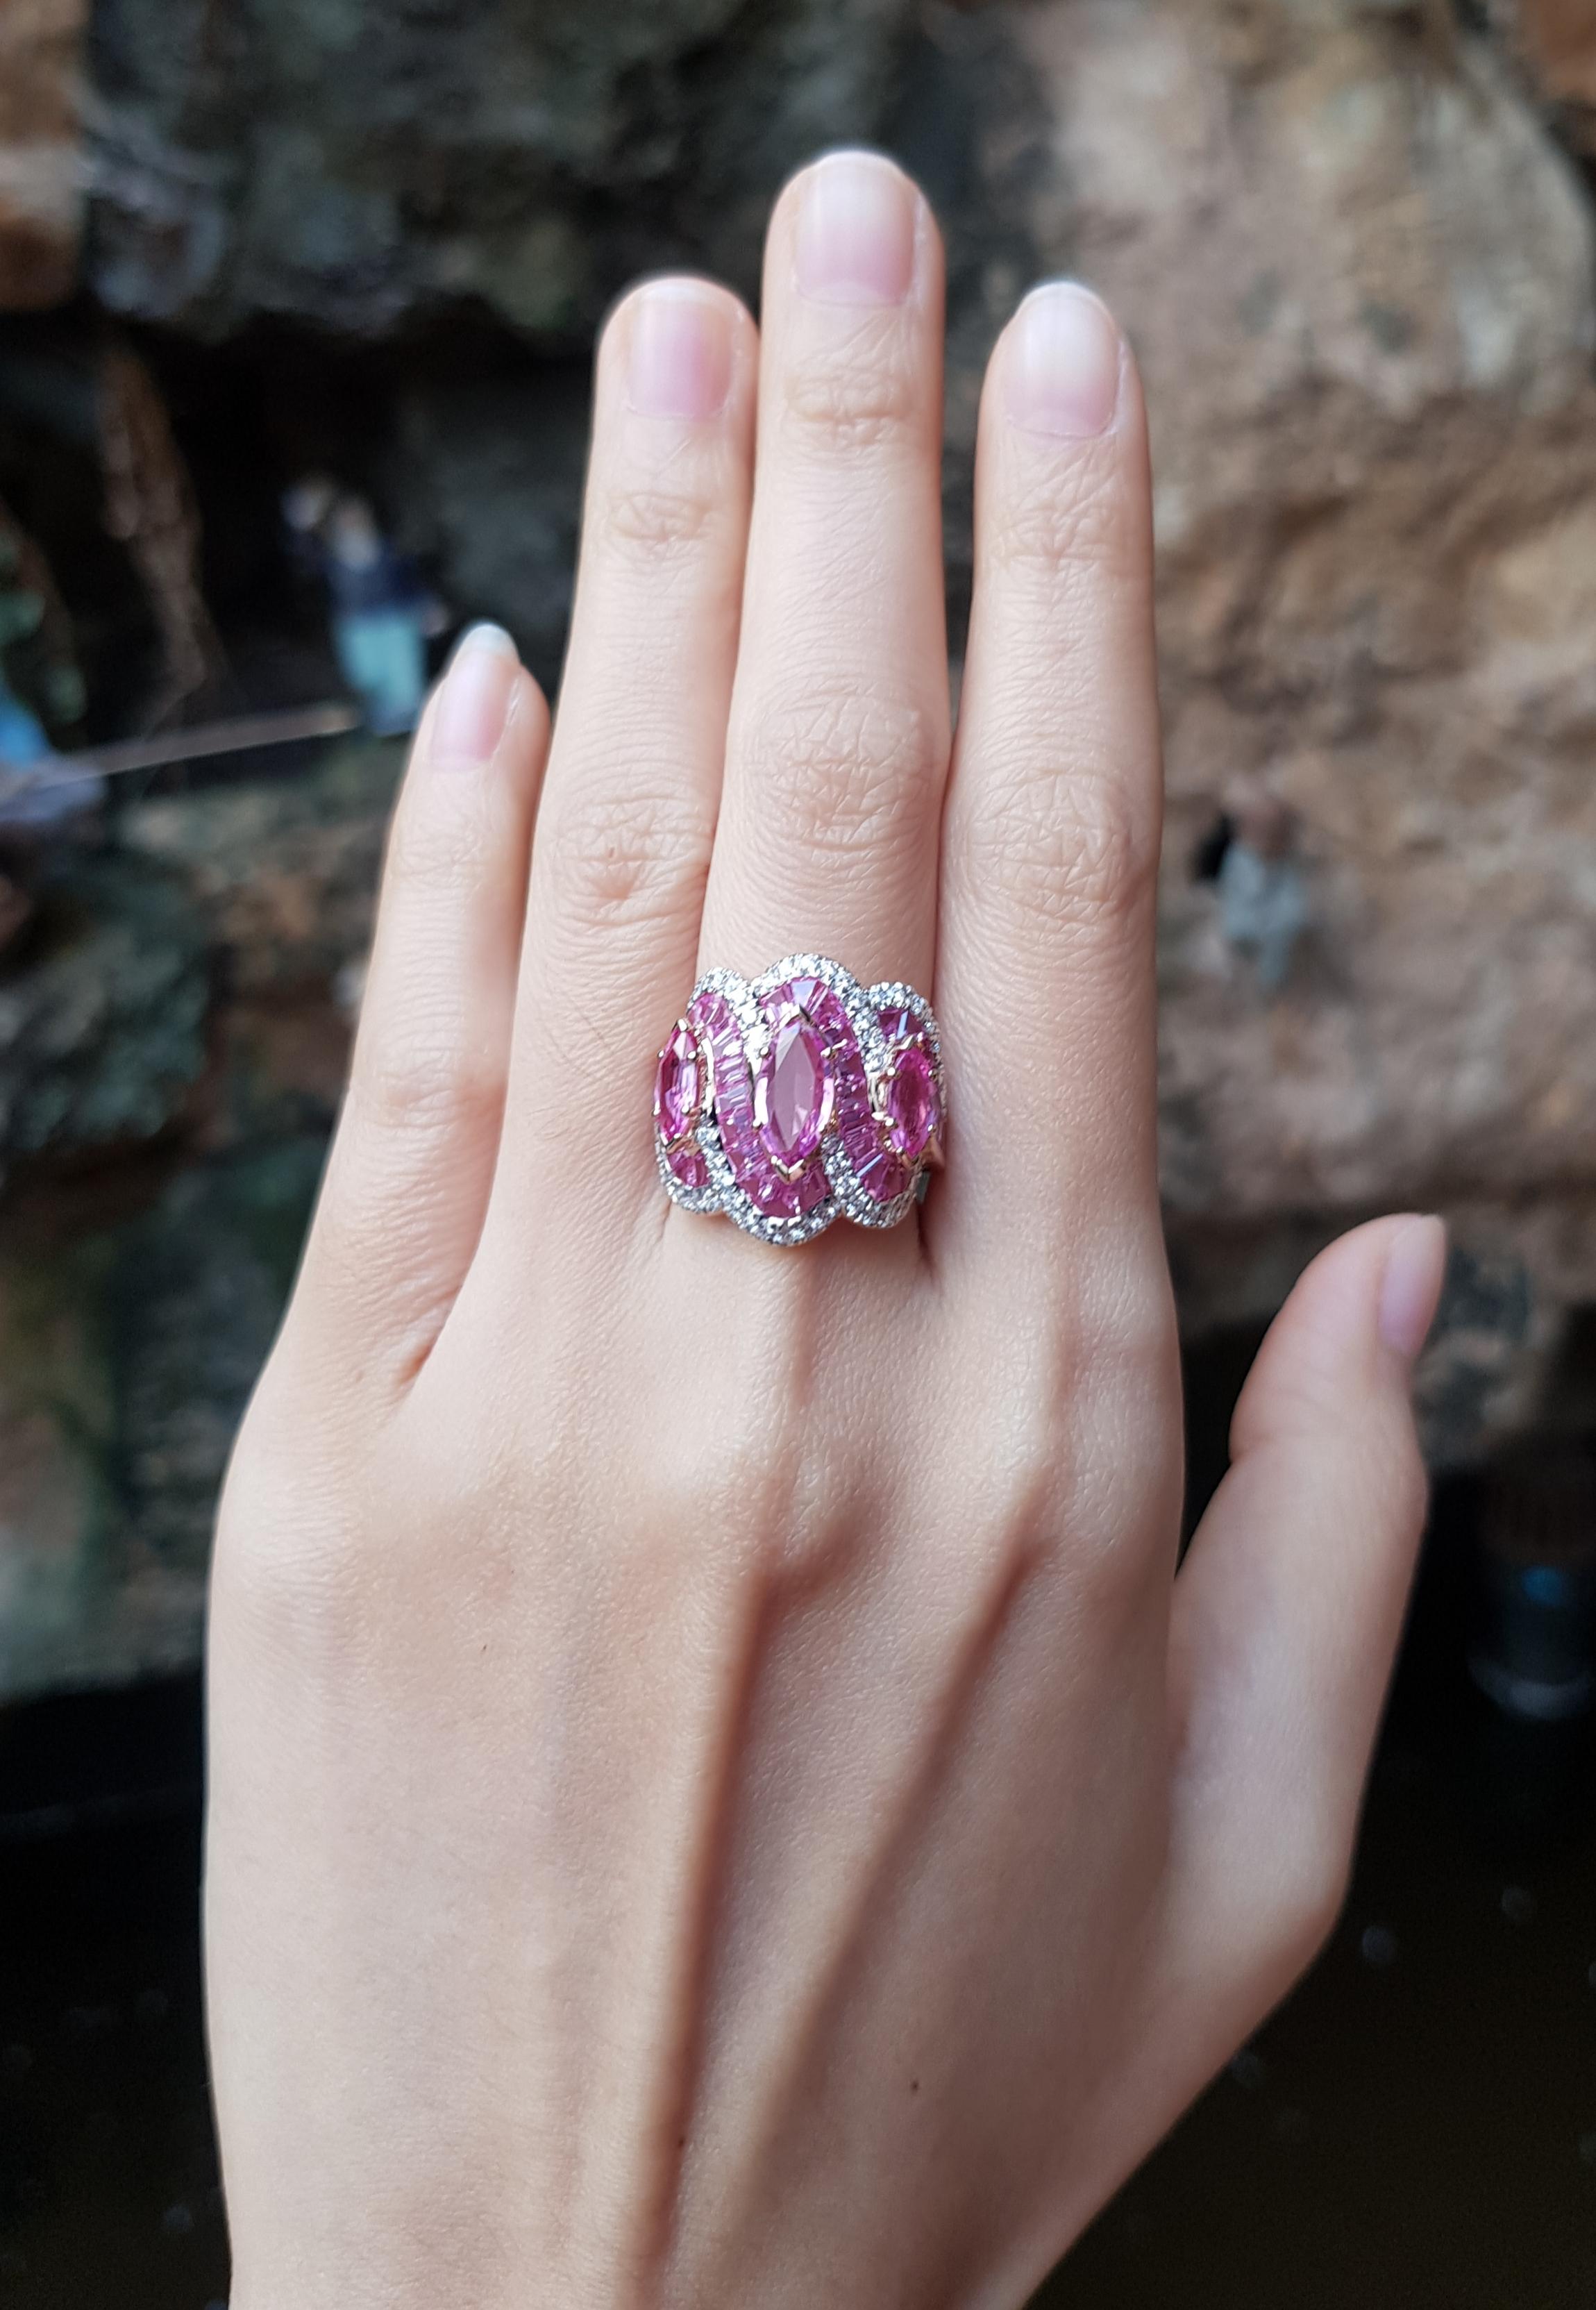 Pink Sapphire 8.24 carats with Pink Sapphire 2.20 carats and Diamond 0.56 carat Ring set 18 Karat Rose Gold Settings

Width:  2.2 cm 
Length: 2.0 cm
Ring Size: 51
Total Weight: 10.55 grams

